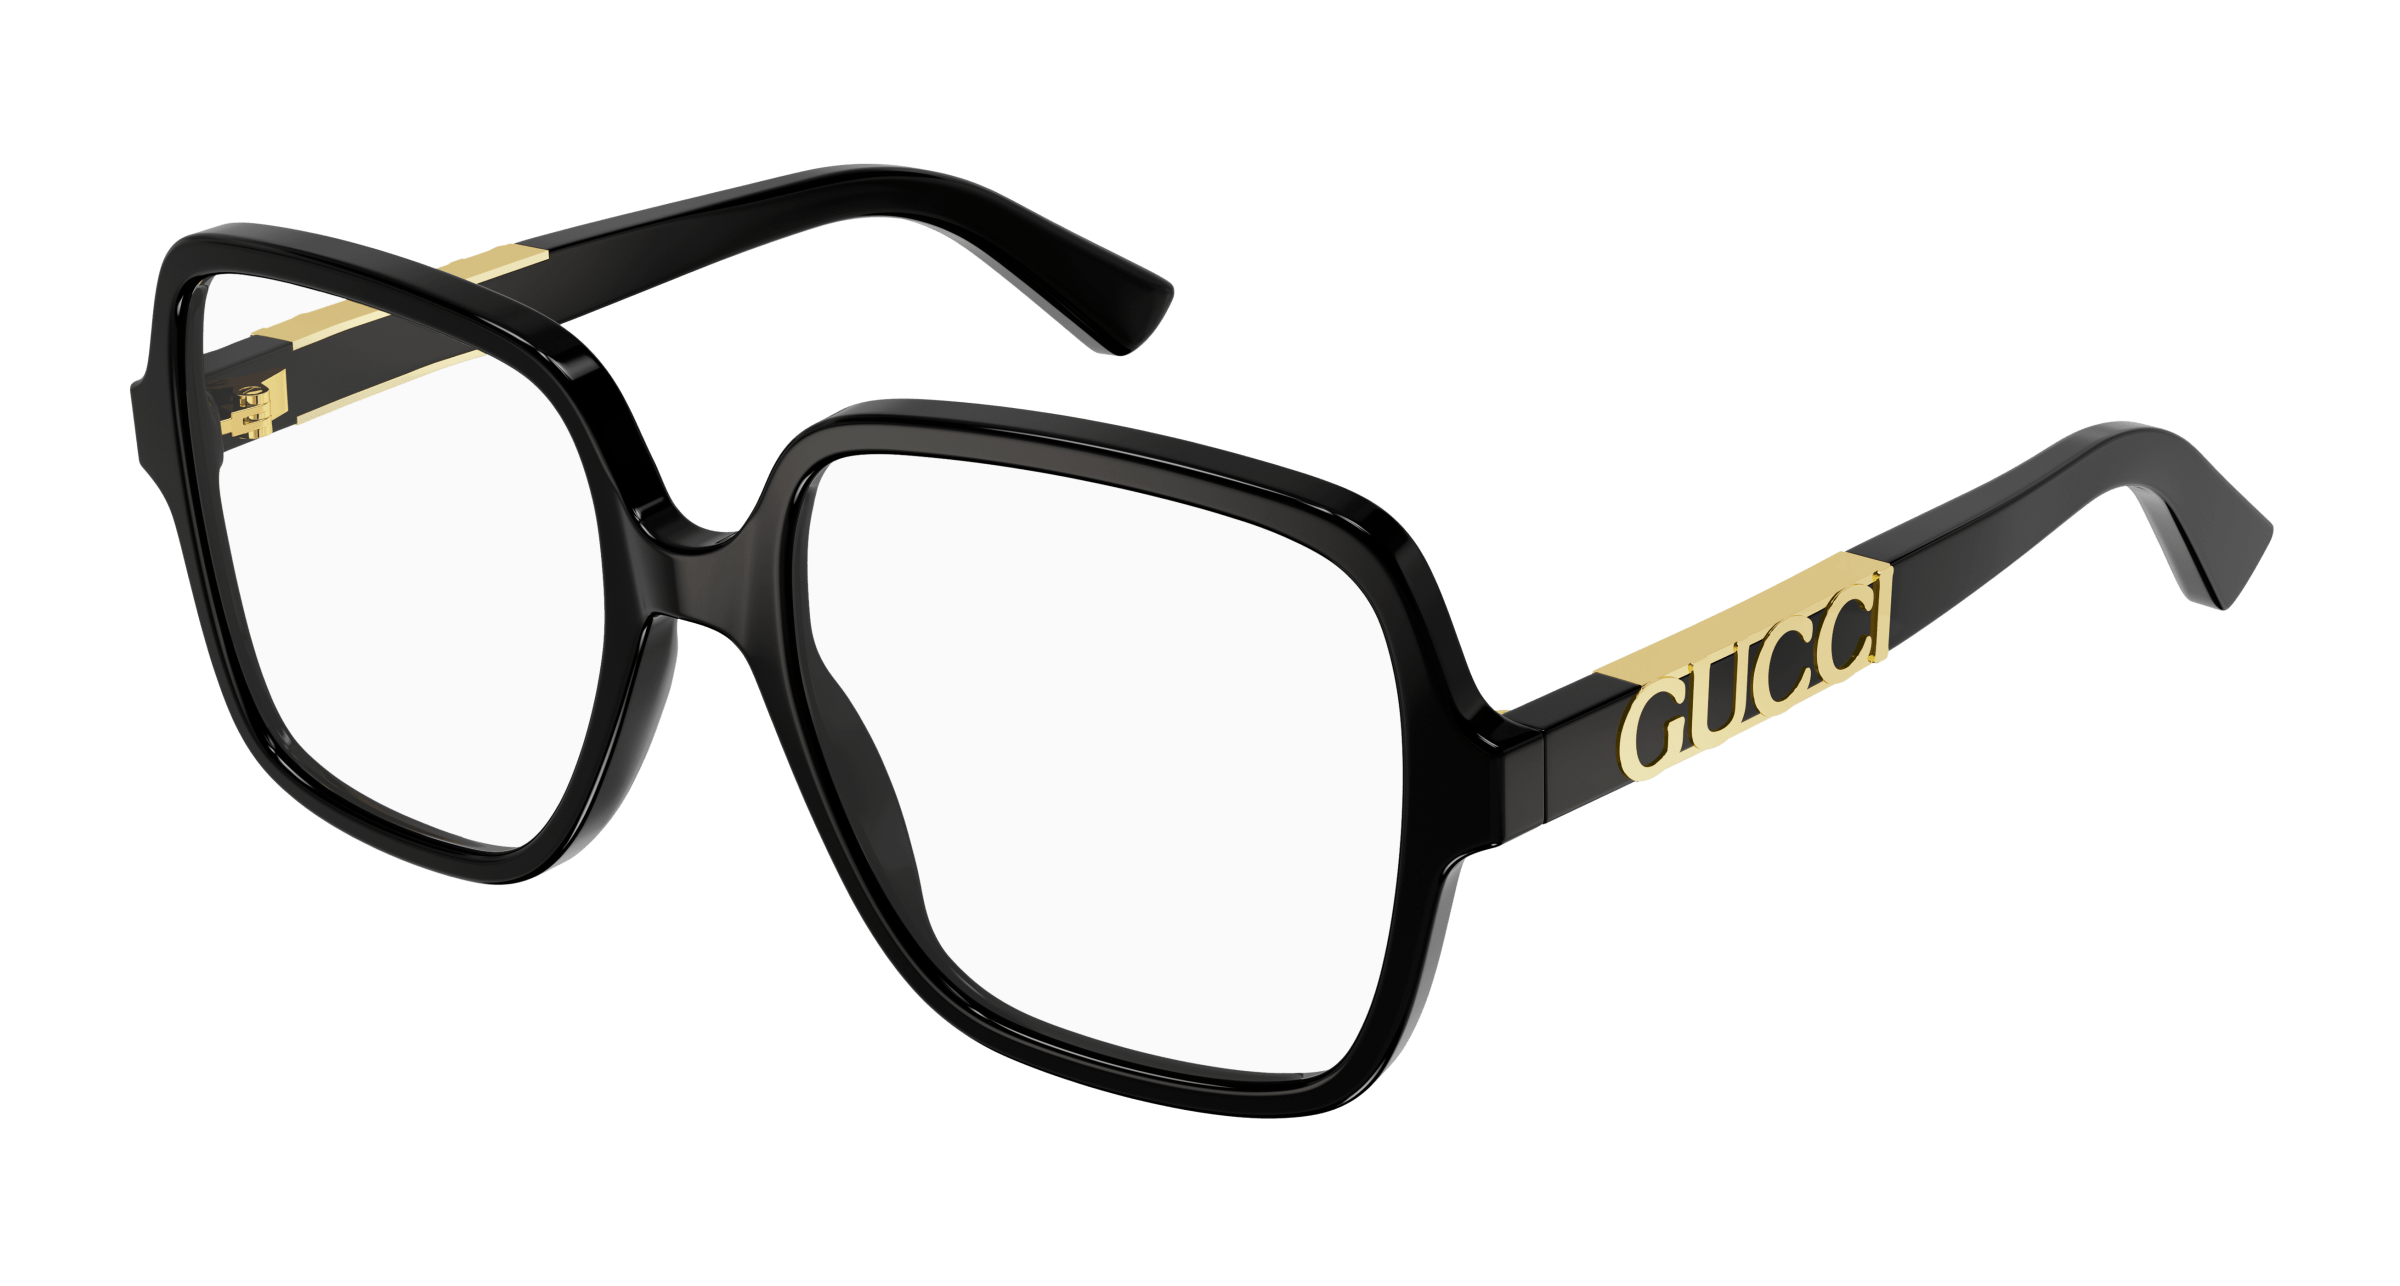 chanel designer glasses